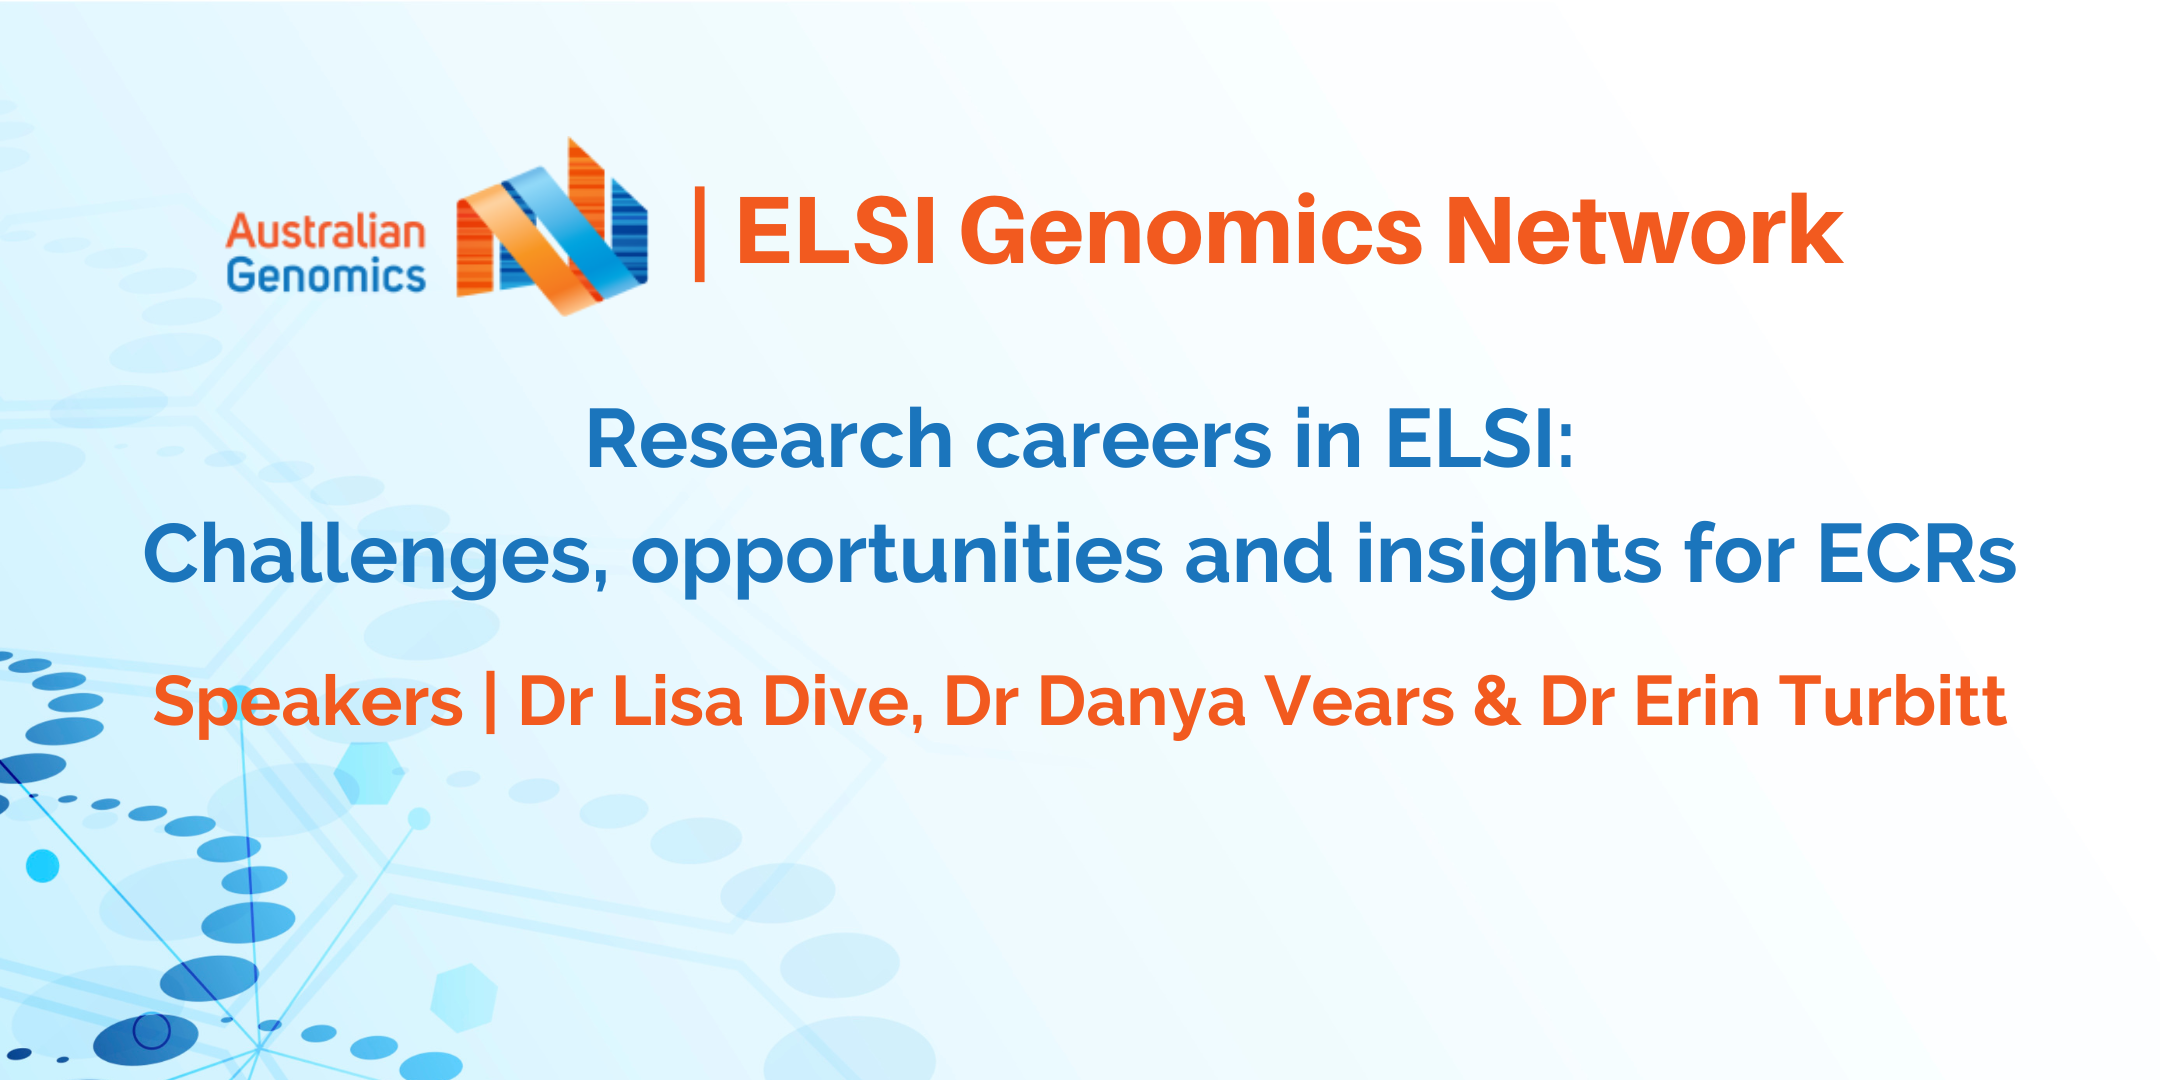 ELSI Genomics Network seminar